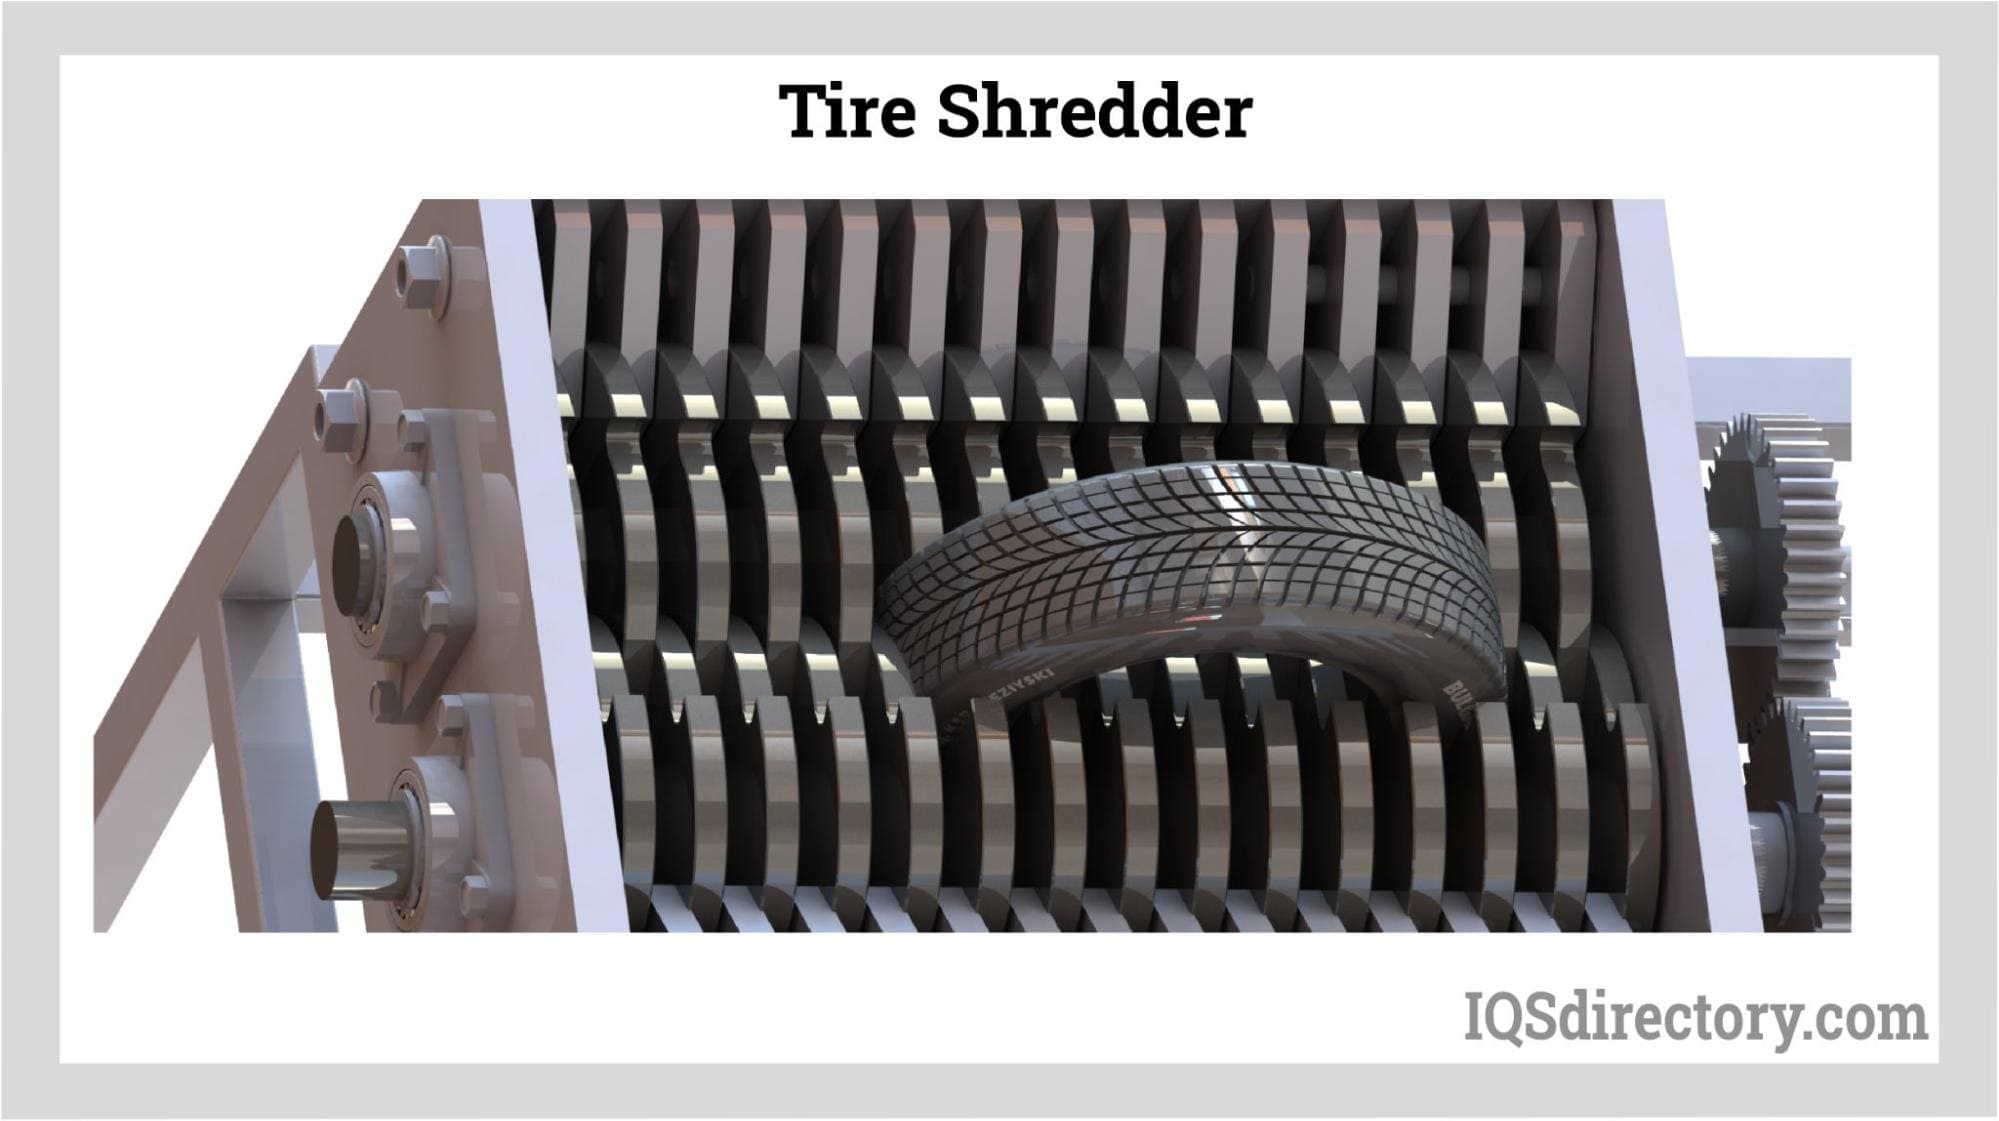 Tire Shredders